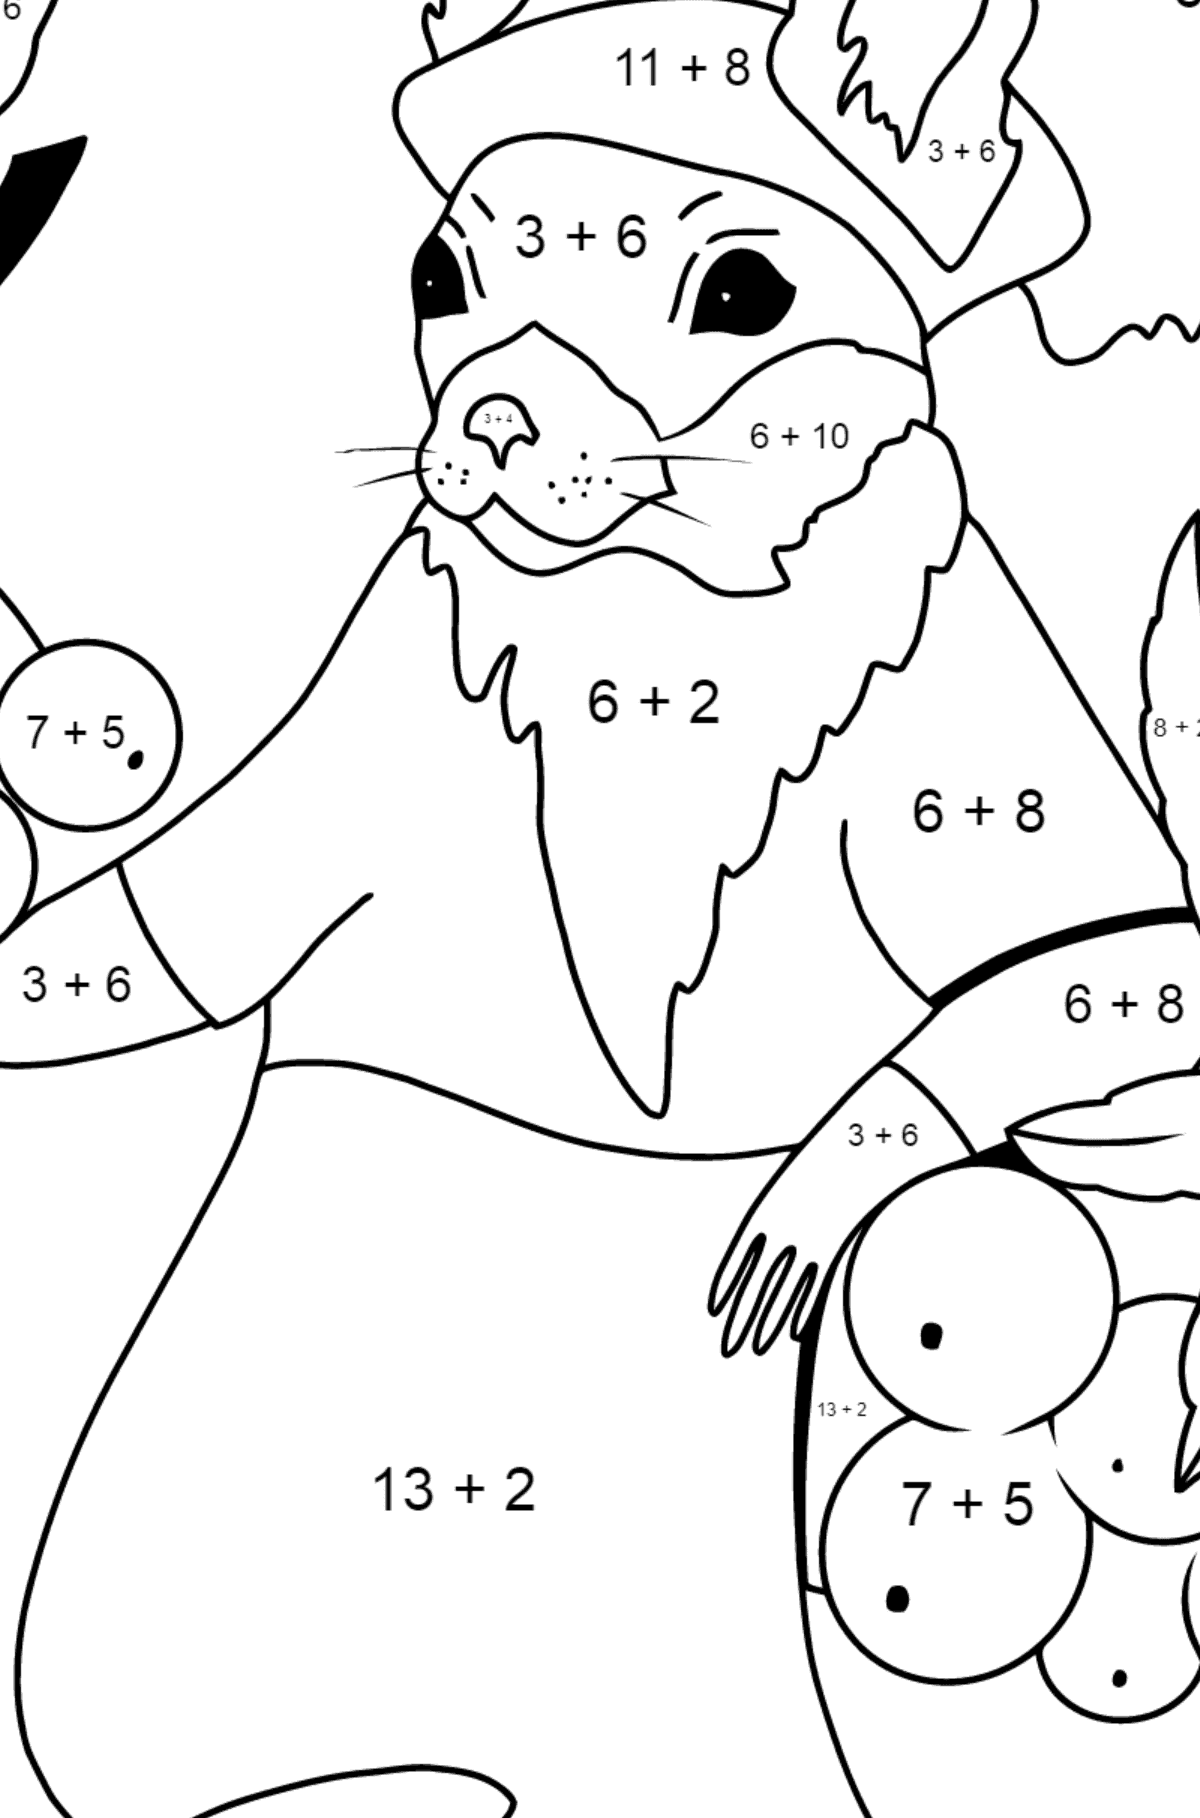 Herbstliche Ausmalseite - Ein Eichhörnchen mit Vogelbeeren - Mathe Ausmalbilder - Addition für Kinder